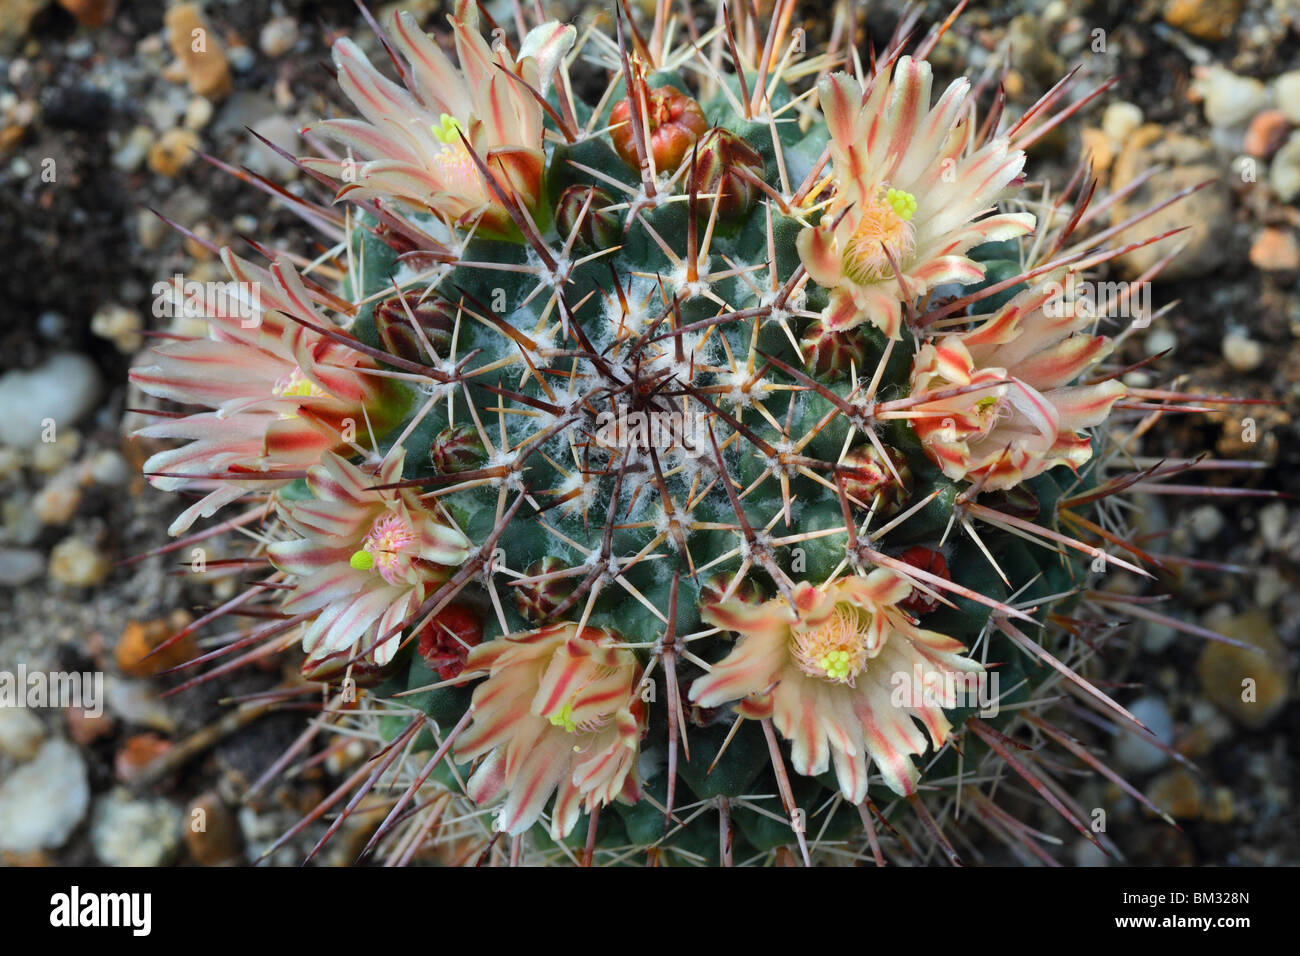 Cactus Mammillaria gigantea flowering Mamilaria Stock Photo